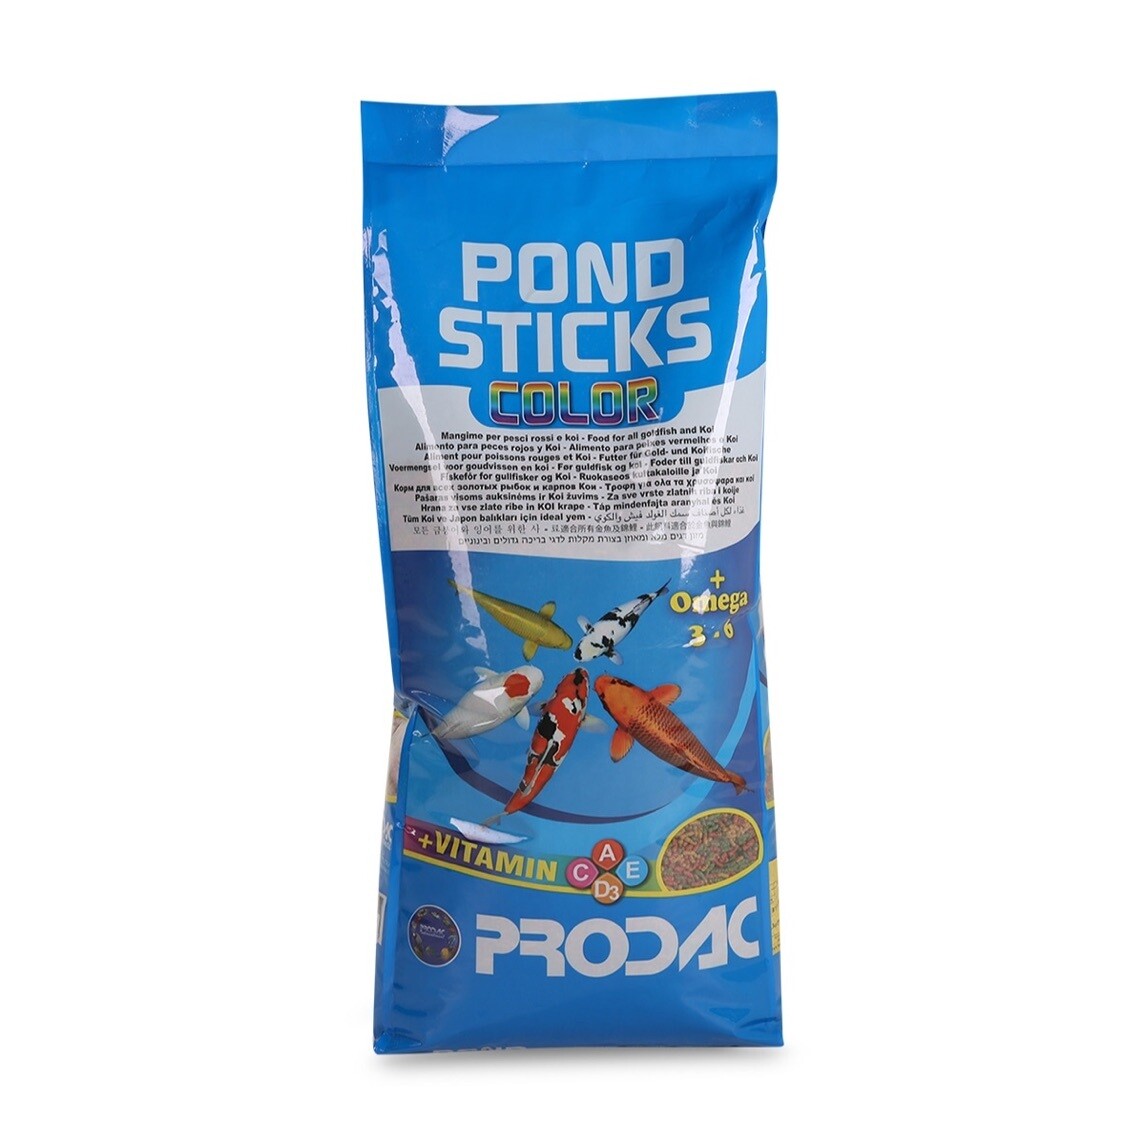 PRODAC PONDSTICKS, 3 вида палочек, мешок 7,5кг (АКЦИЯ 5кг +50% бесплатно)